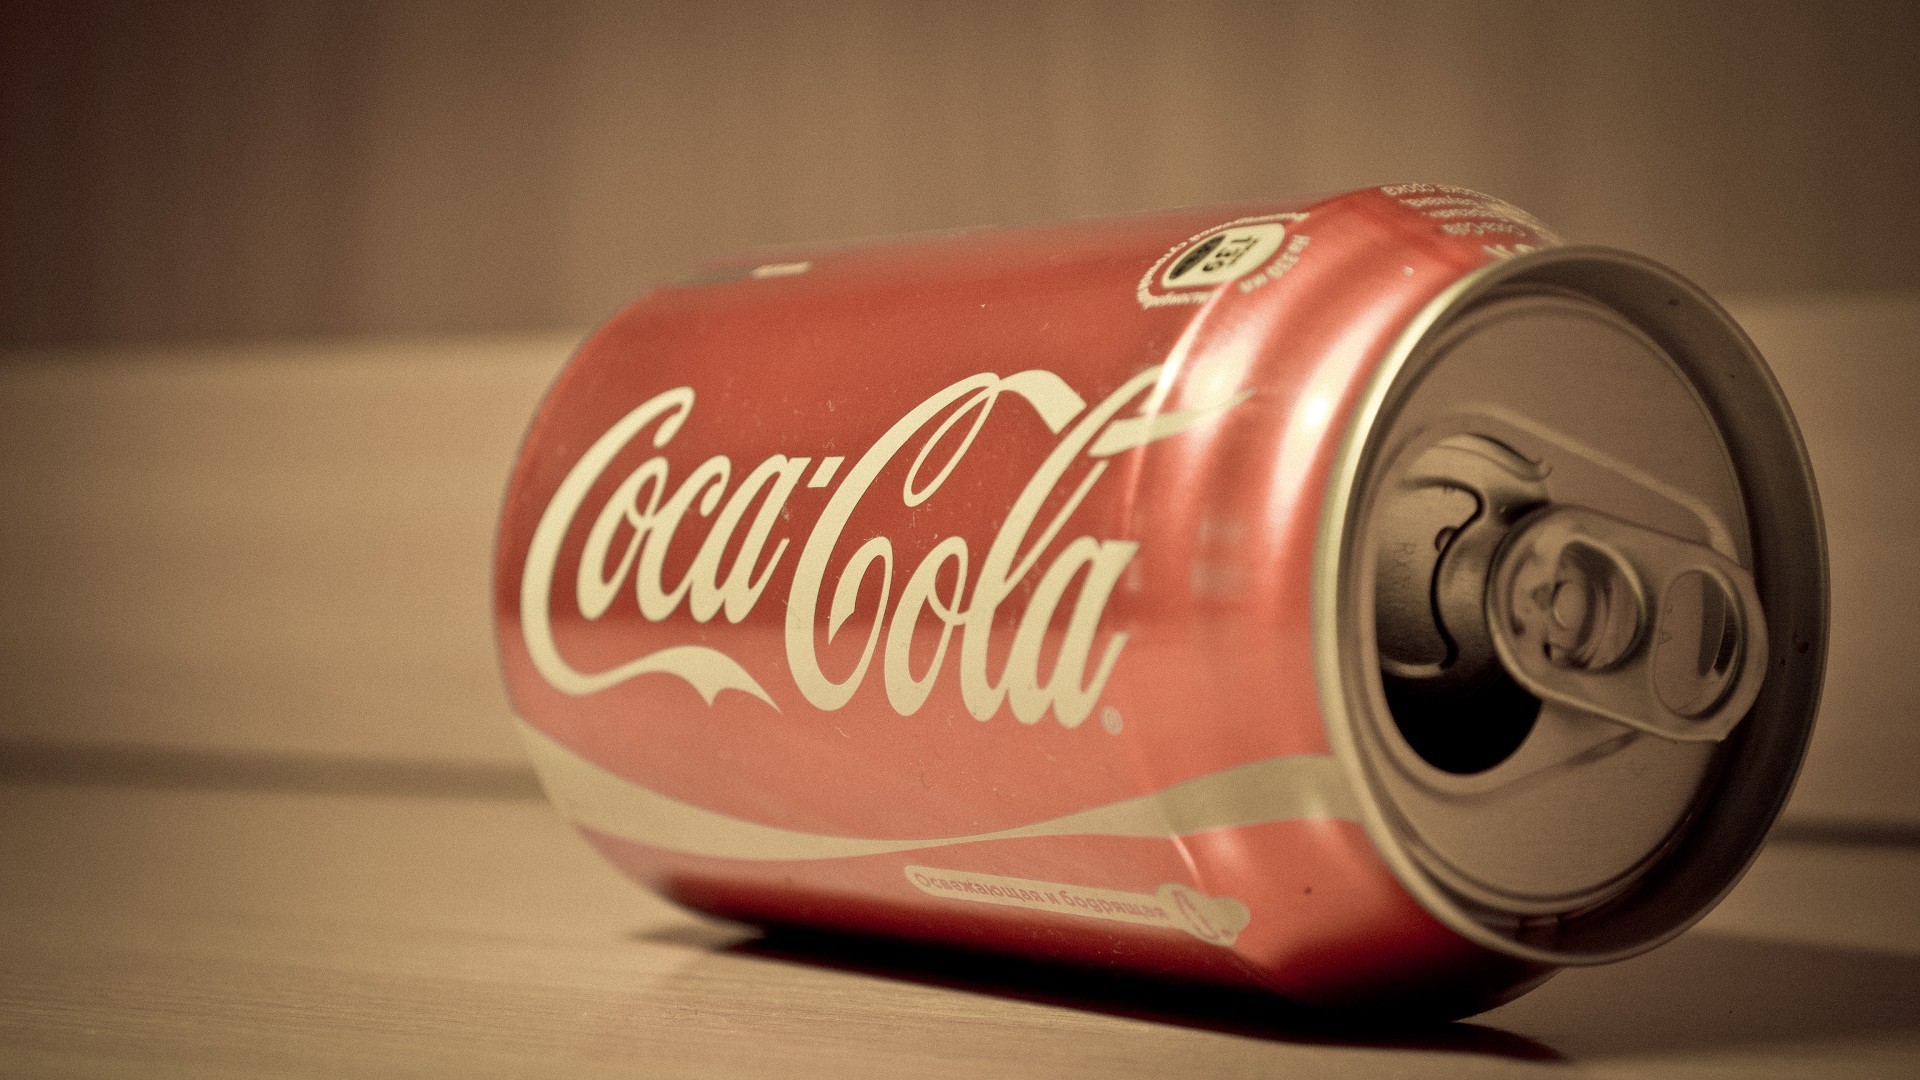 cola wallpaper,beverage can,coca cola,cola,aluminum can,tin can